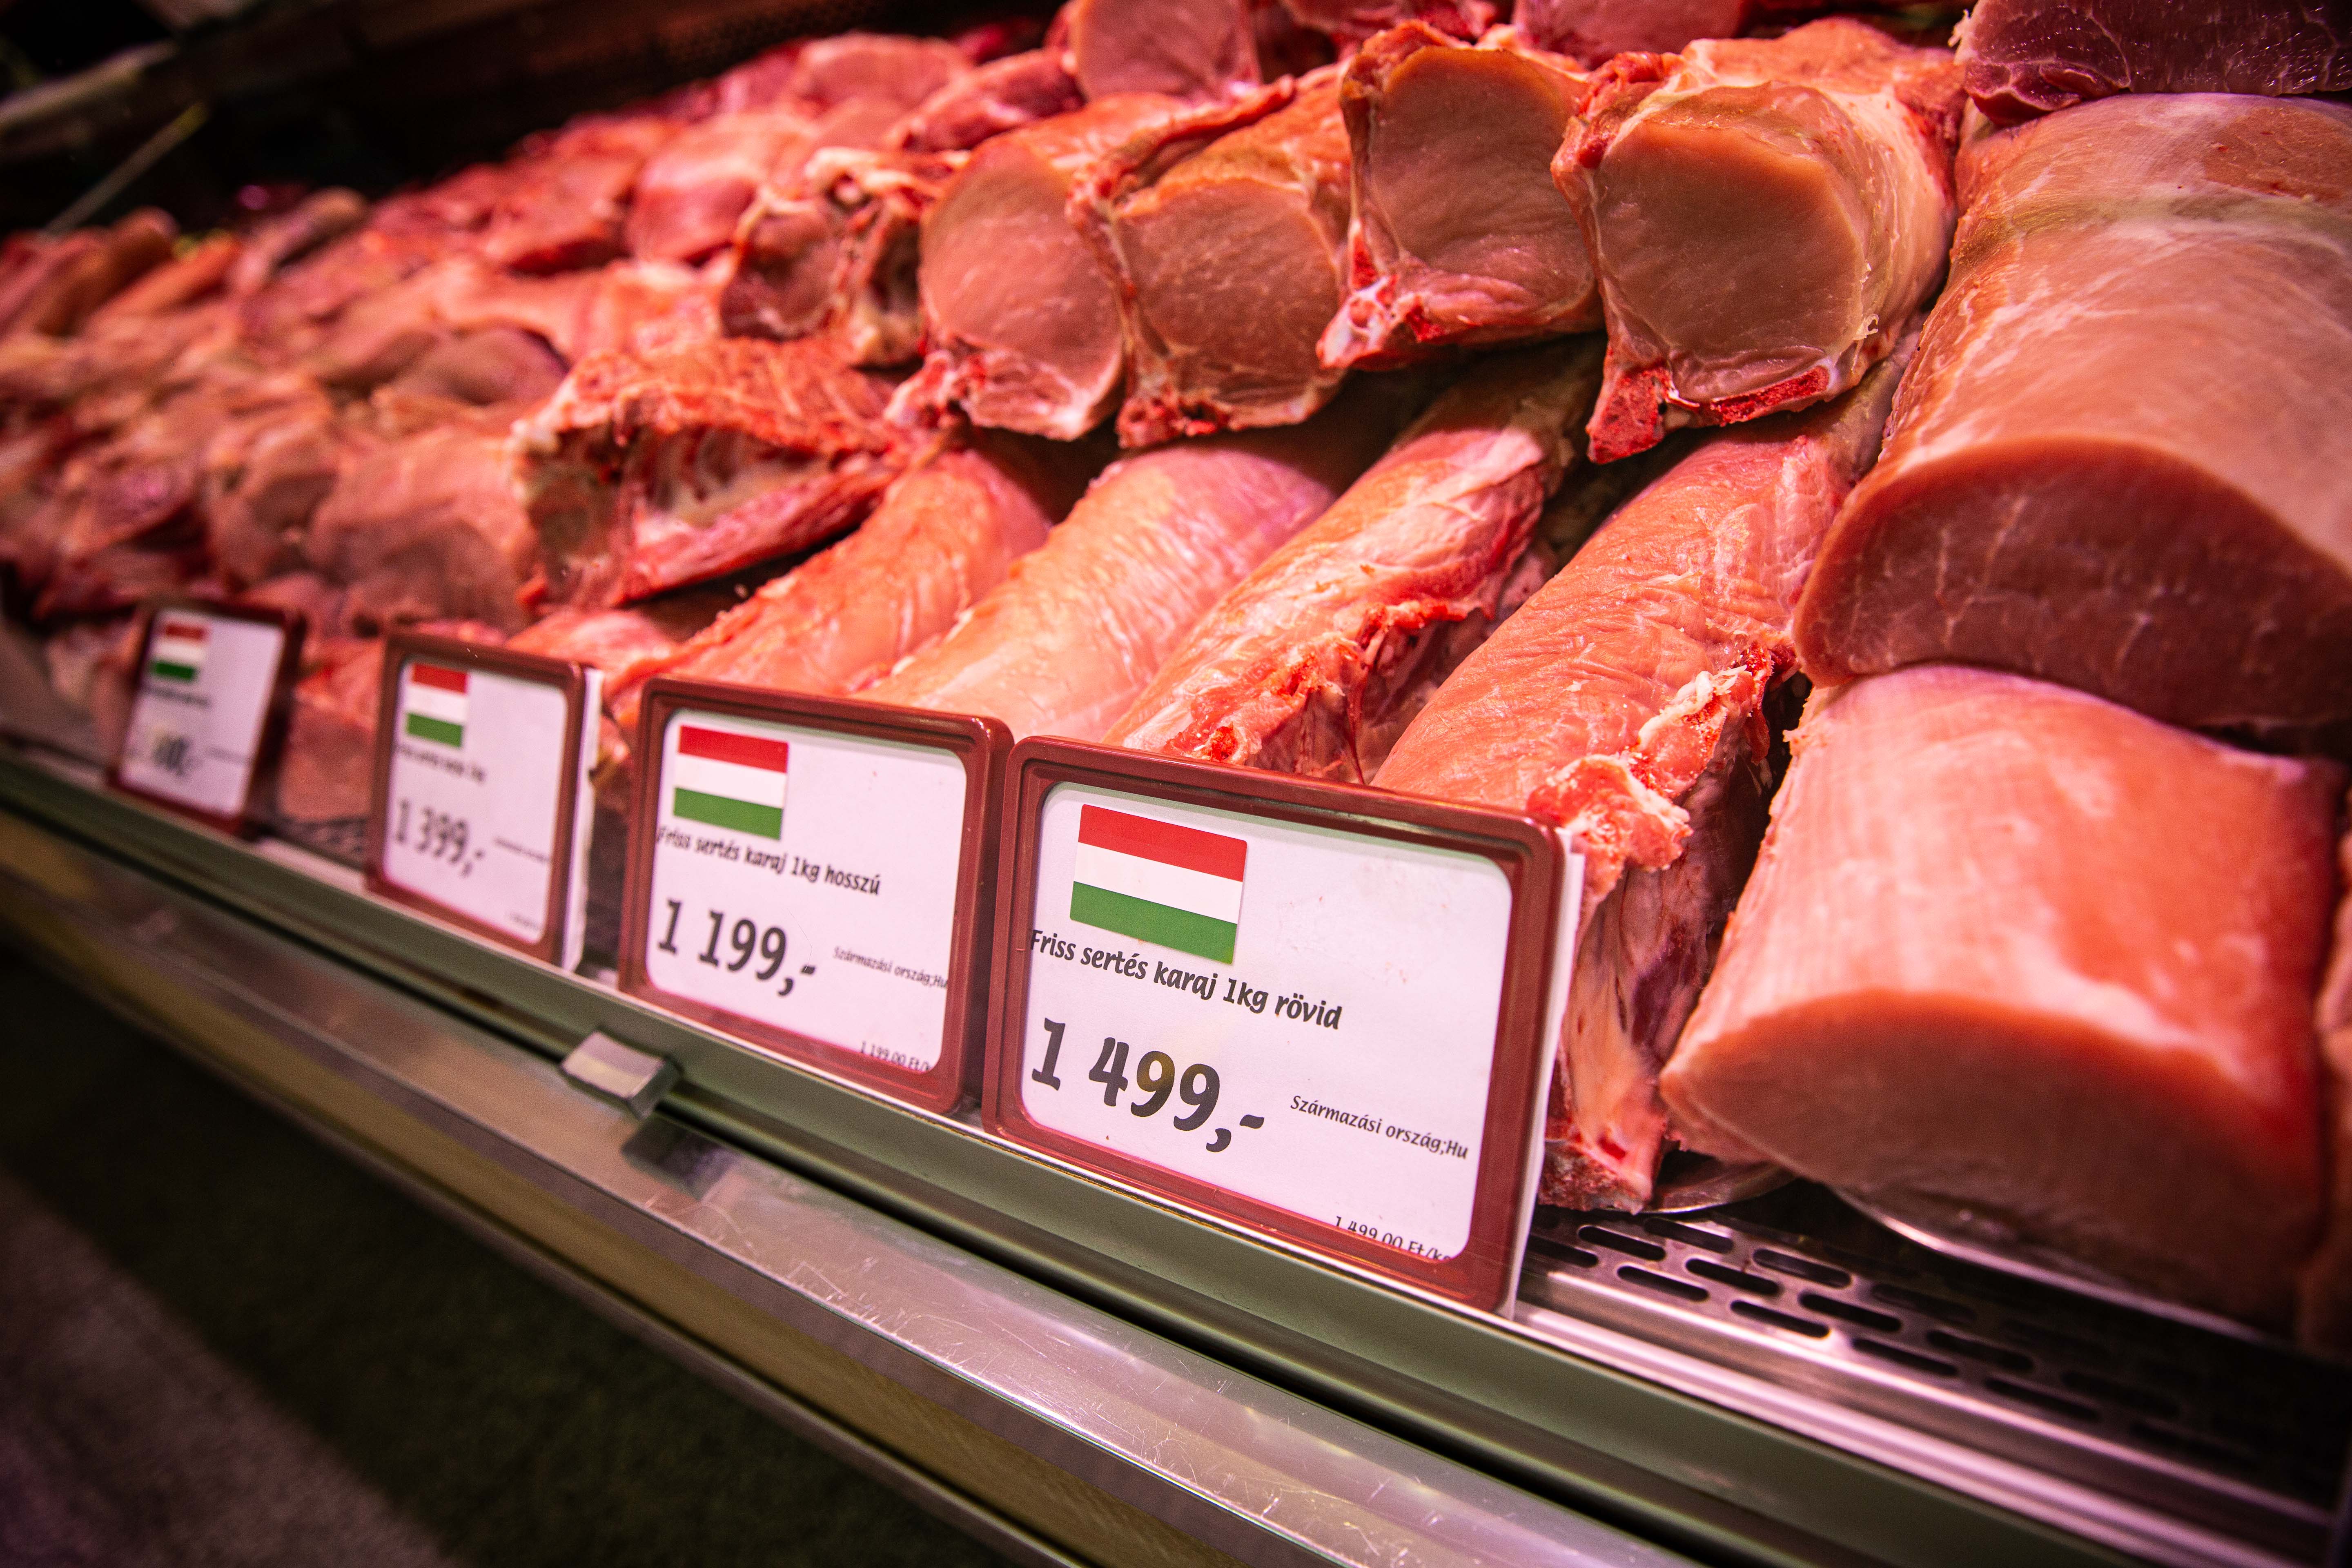 Szerdától a pultból kínált baromfi-, juh- és kecskehús esetében is fel kell tüntetni a származási országot